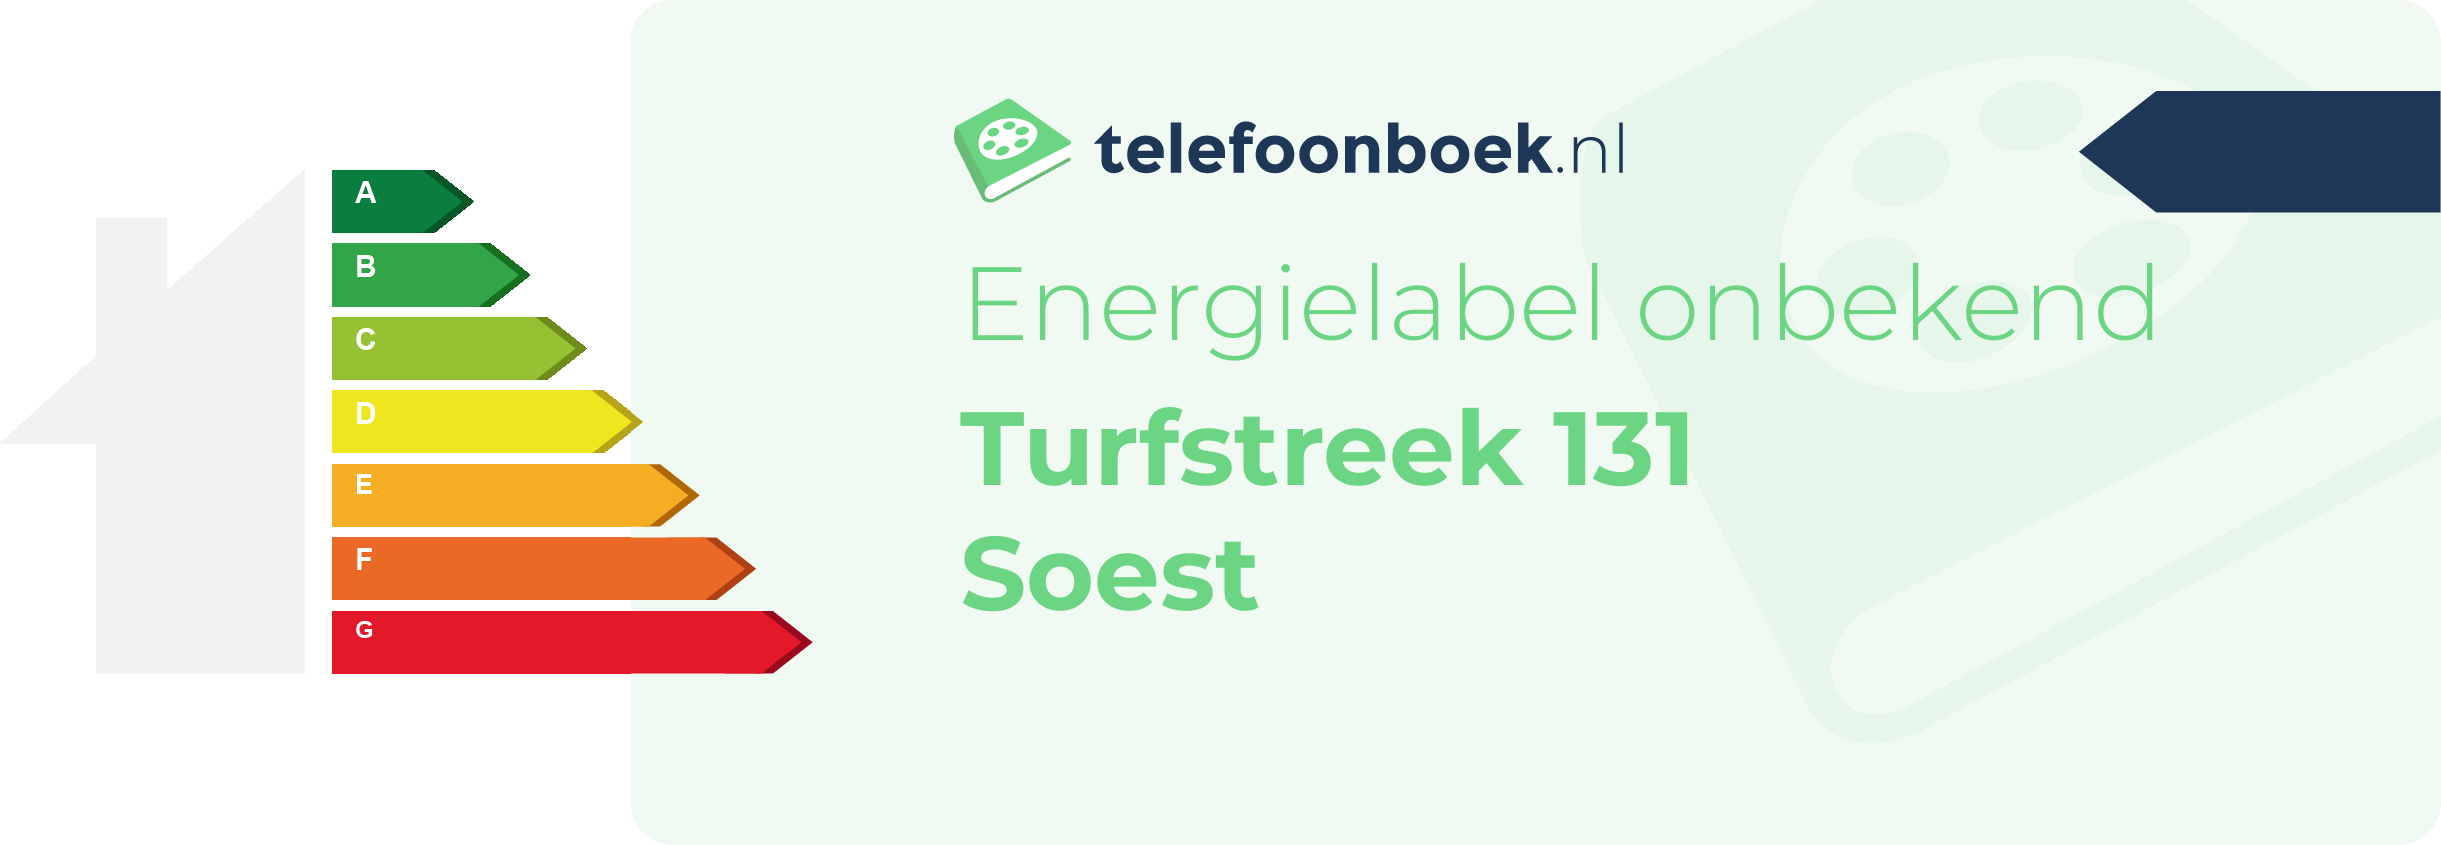 Energielabel Turfstreek 131 Soest